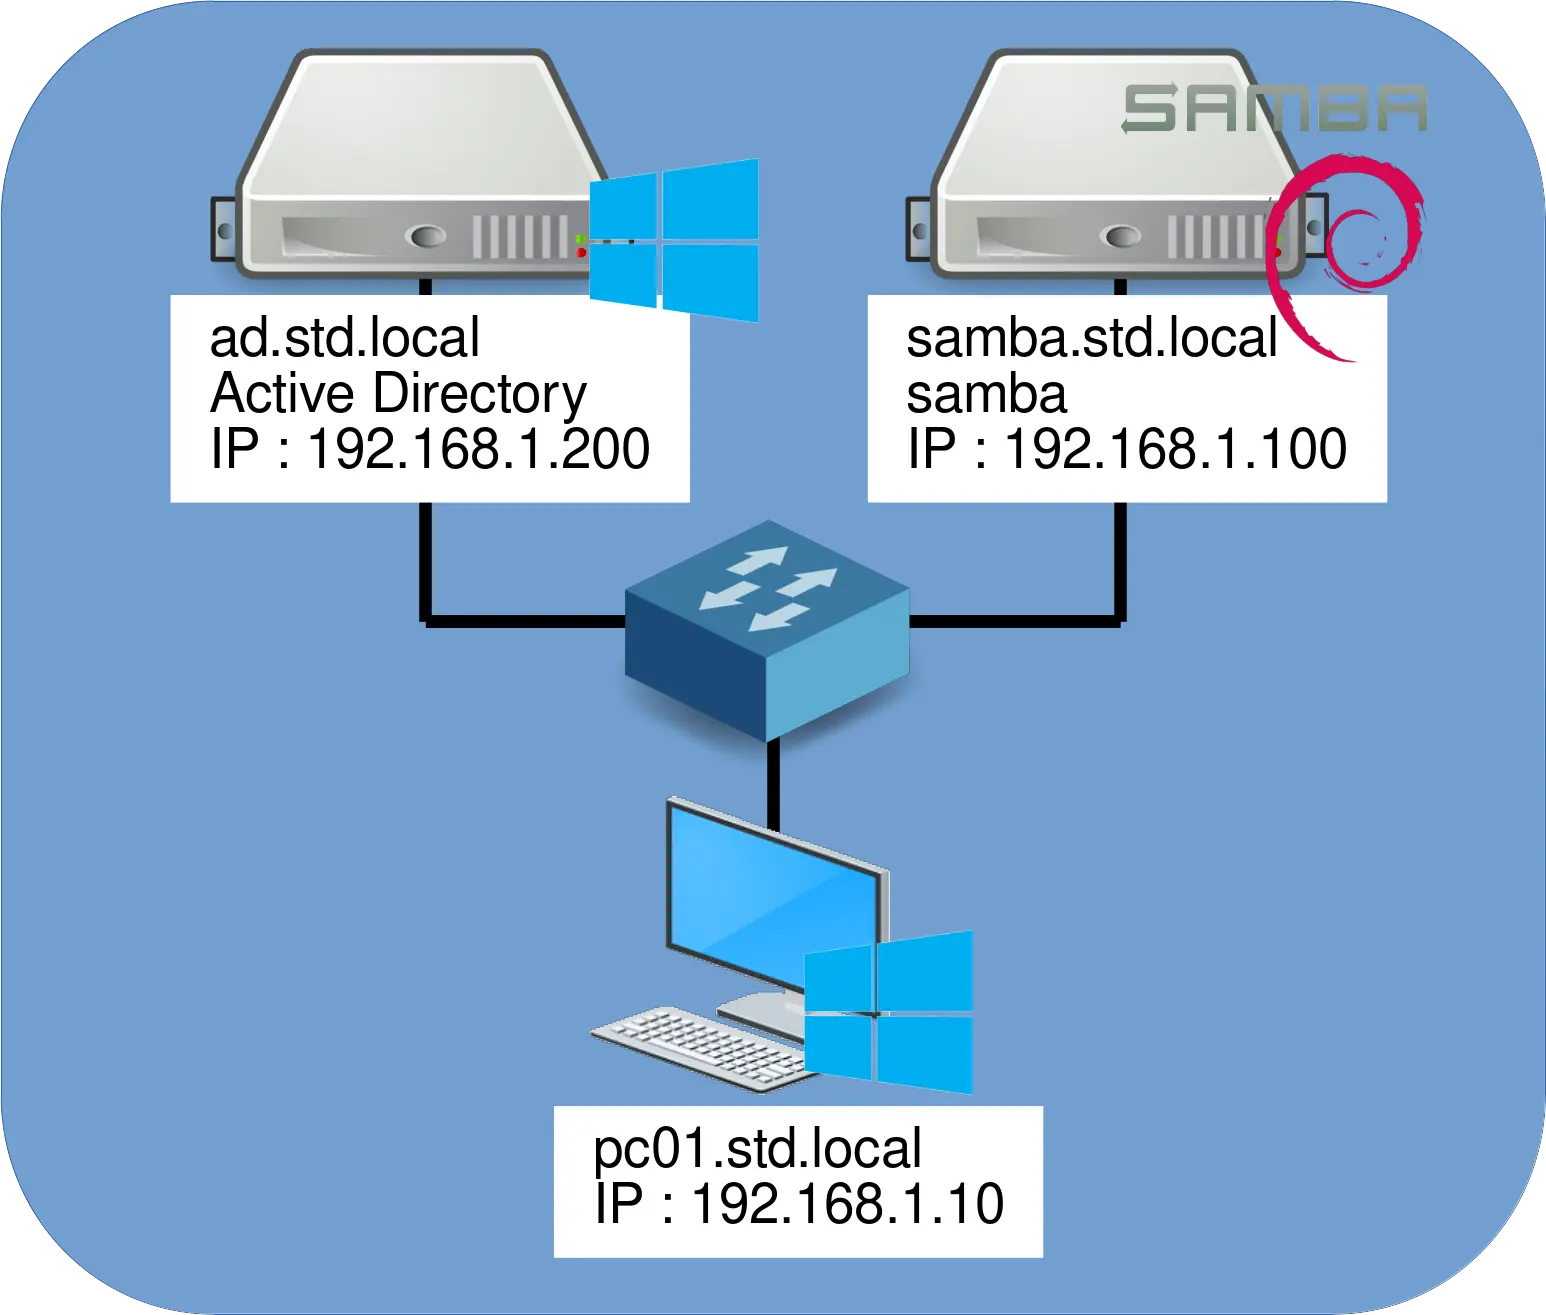 Architecture Winbind avec un serveur Active Directory, un serveur Samba et un client Windows.